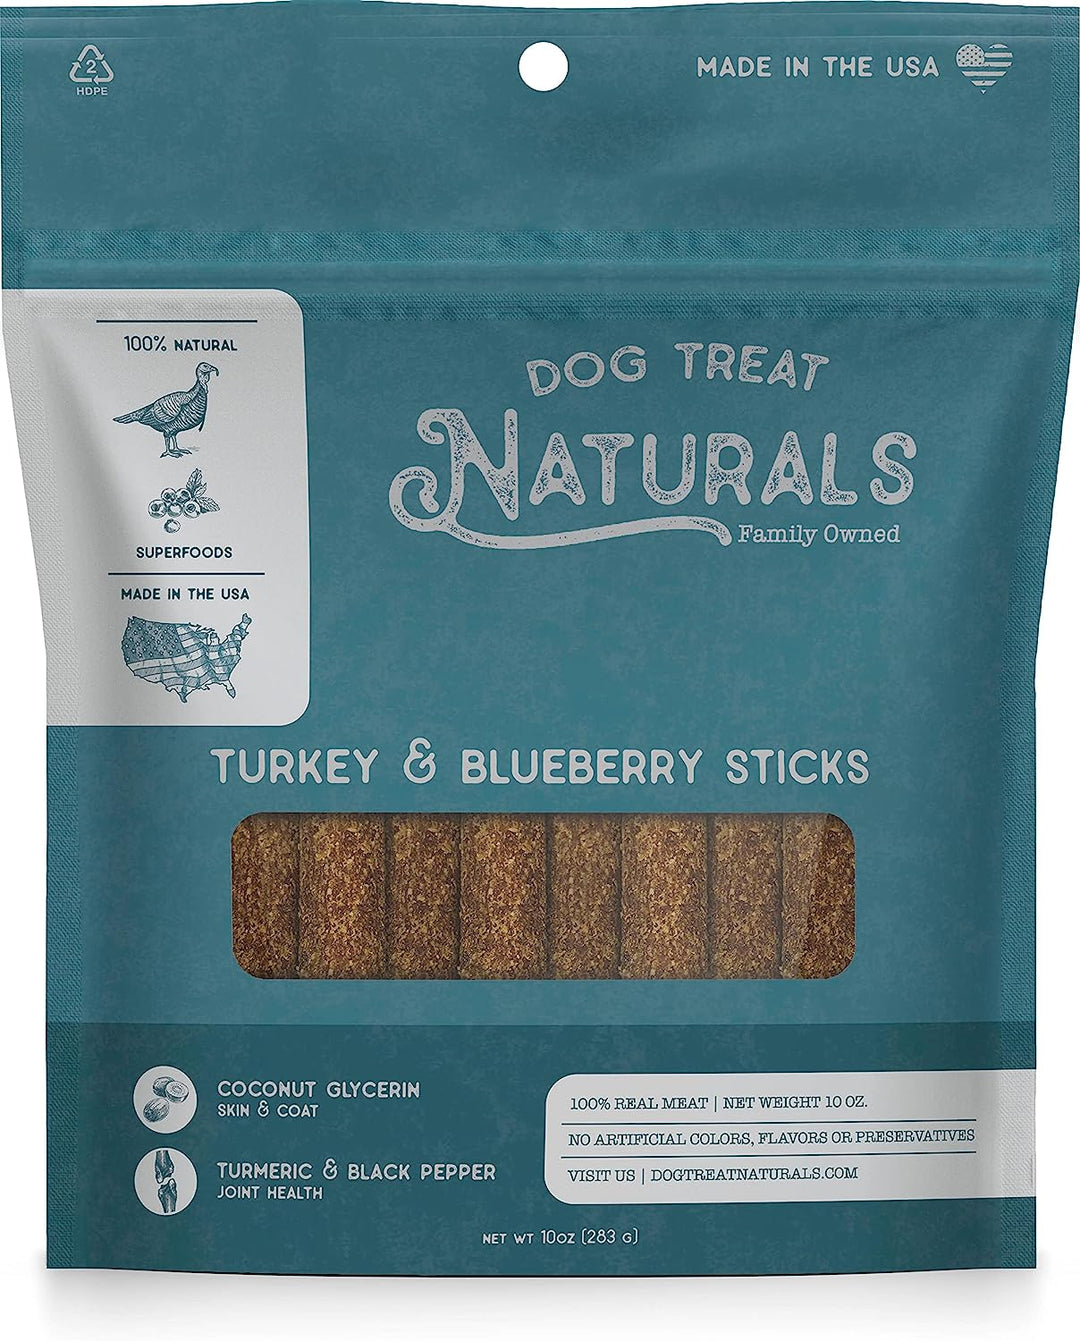 Dog Treat Naturals - Superfood Turkey Blueberry Sticks